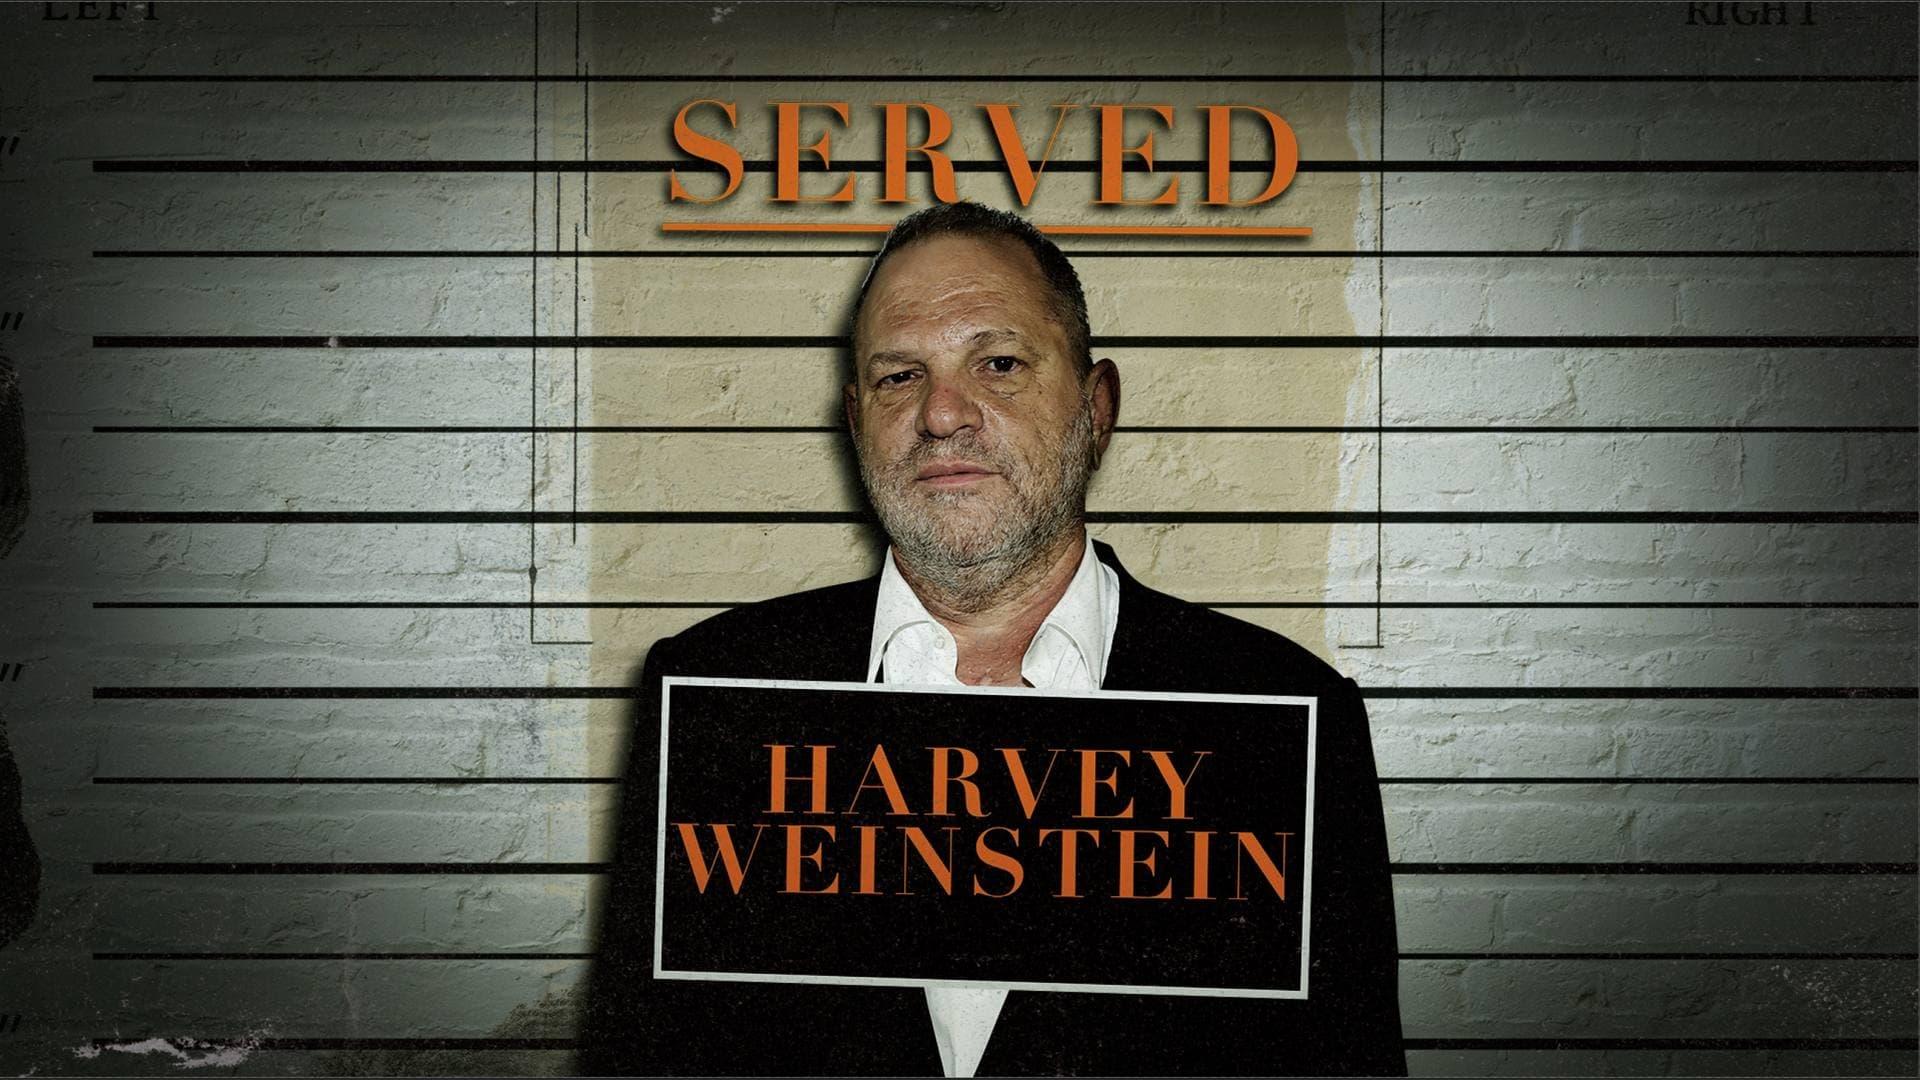 Served: Harvey Weinstein backdrop